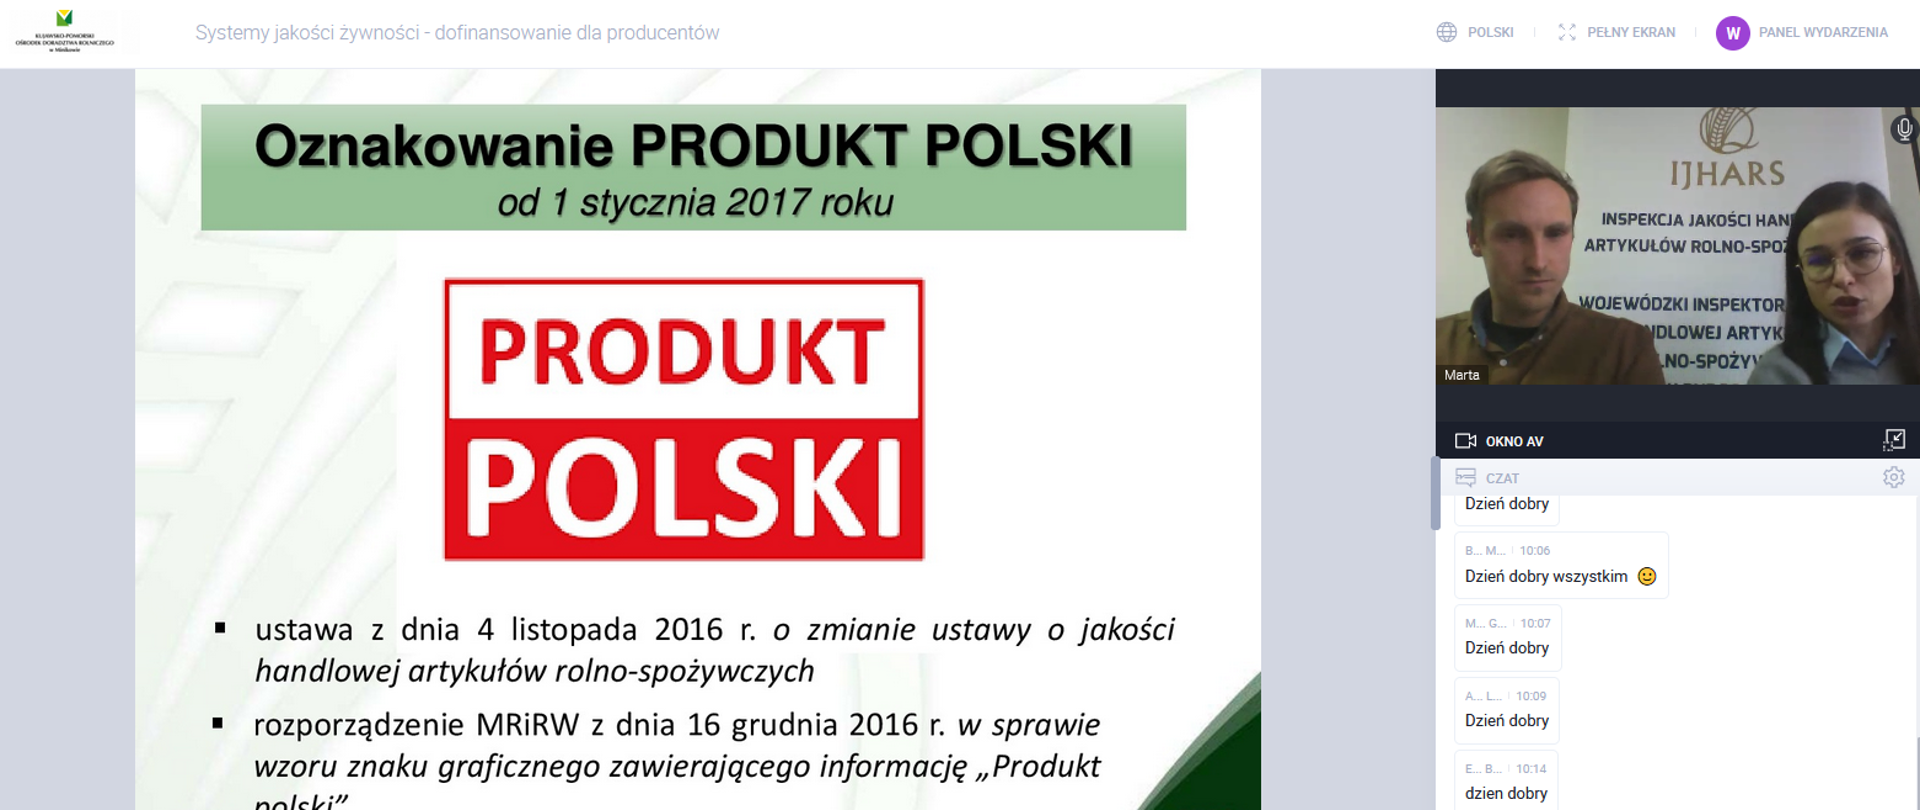 Zdjęcie przedstawia "slajd" z prezentacji (fragment dotyczący Oznakowania "Produkt Polski" wraz ze zdjęciem prowadzących wykłady